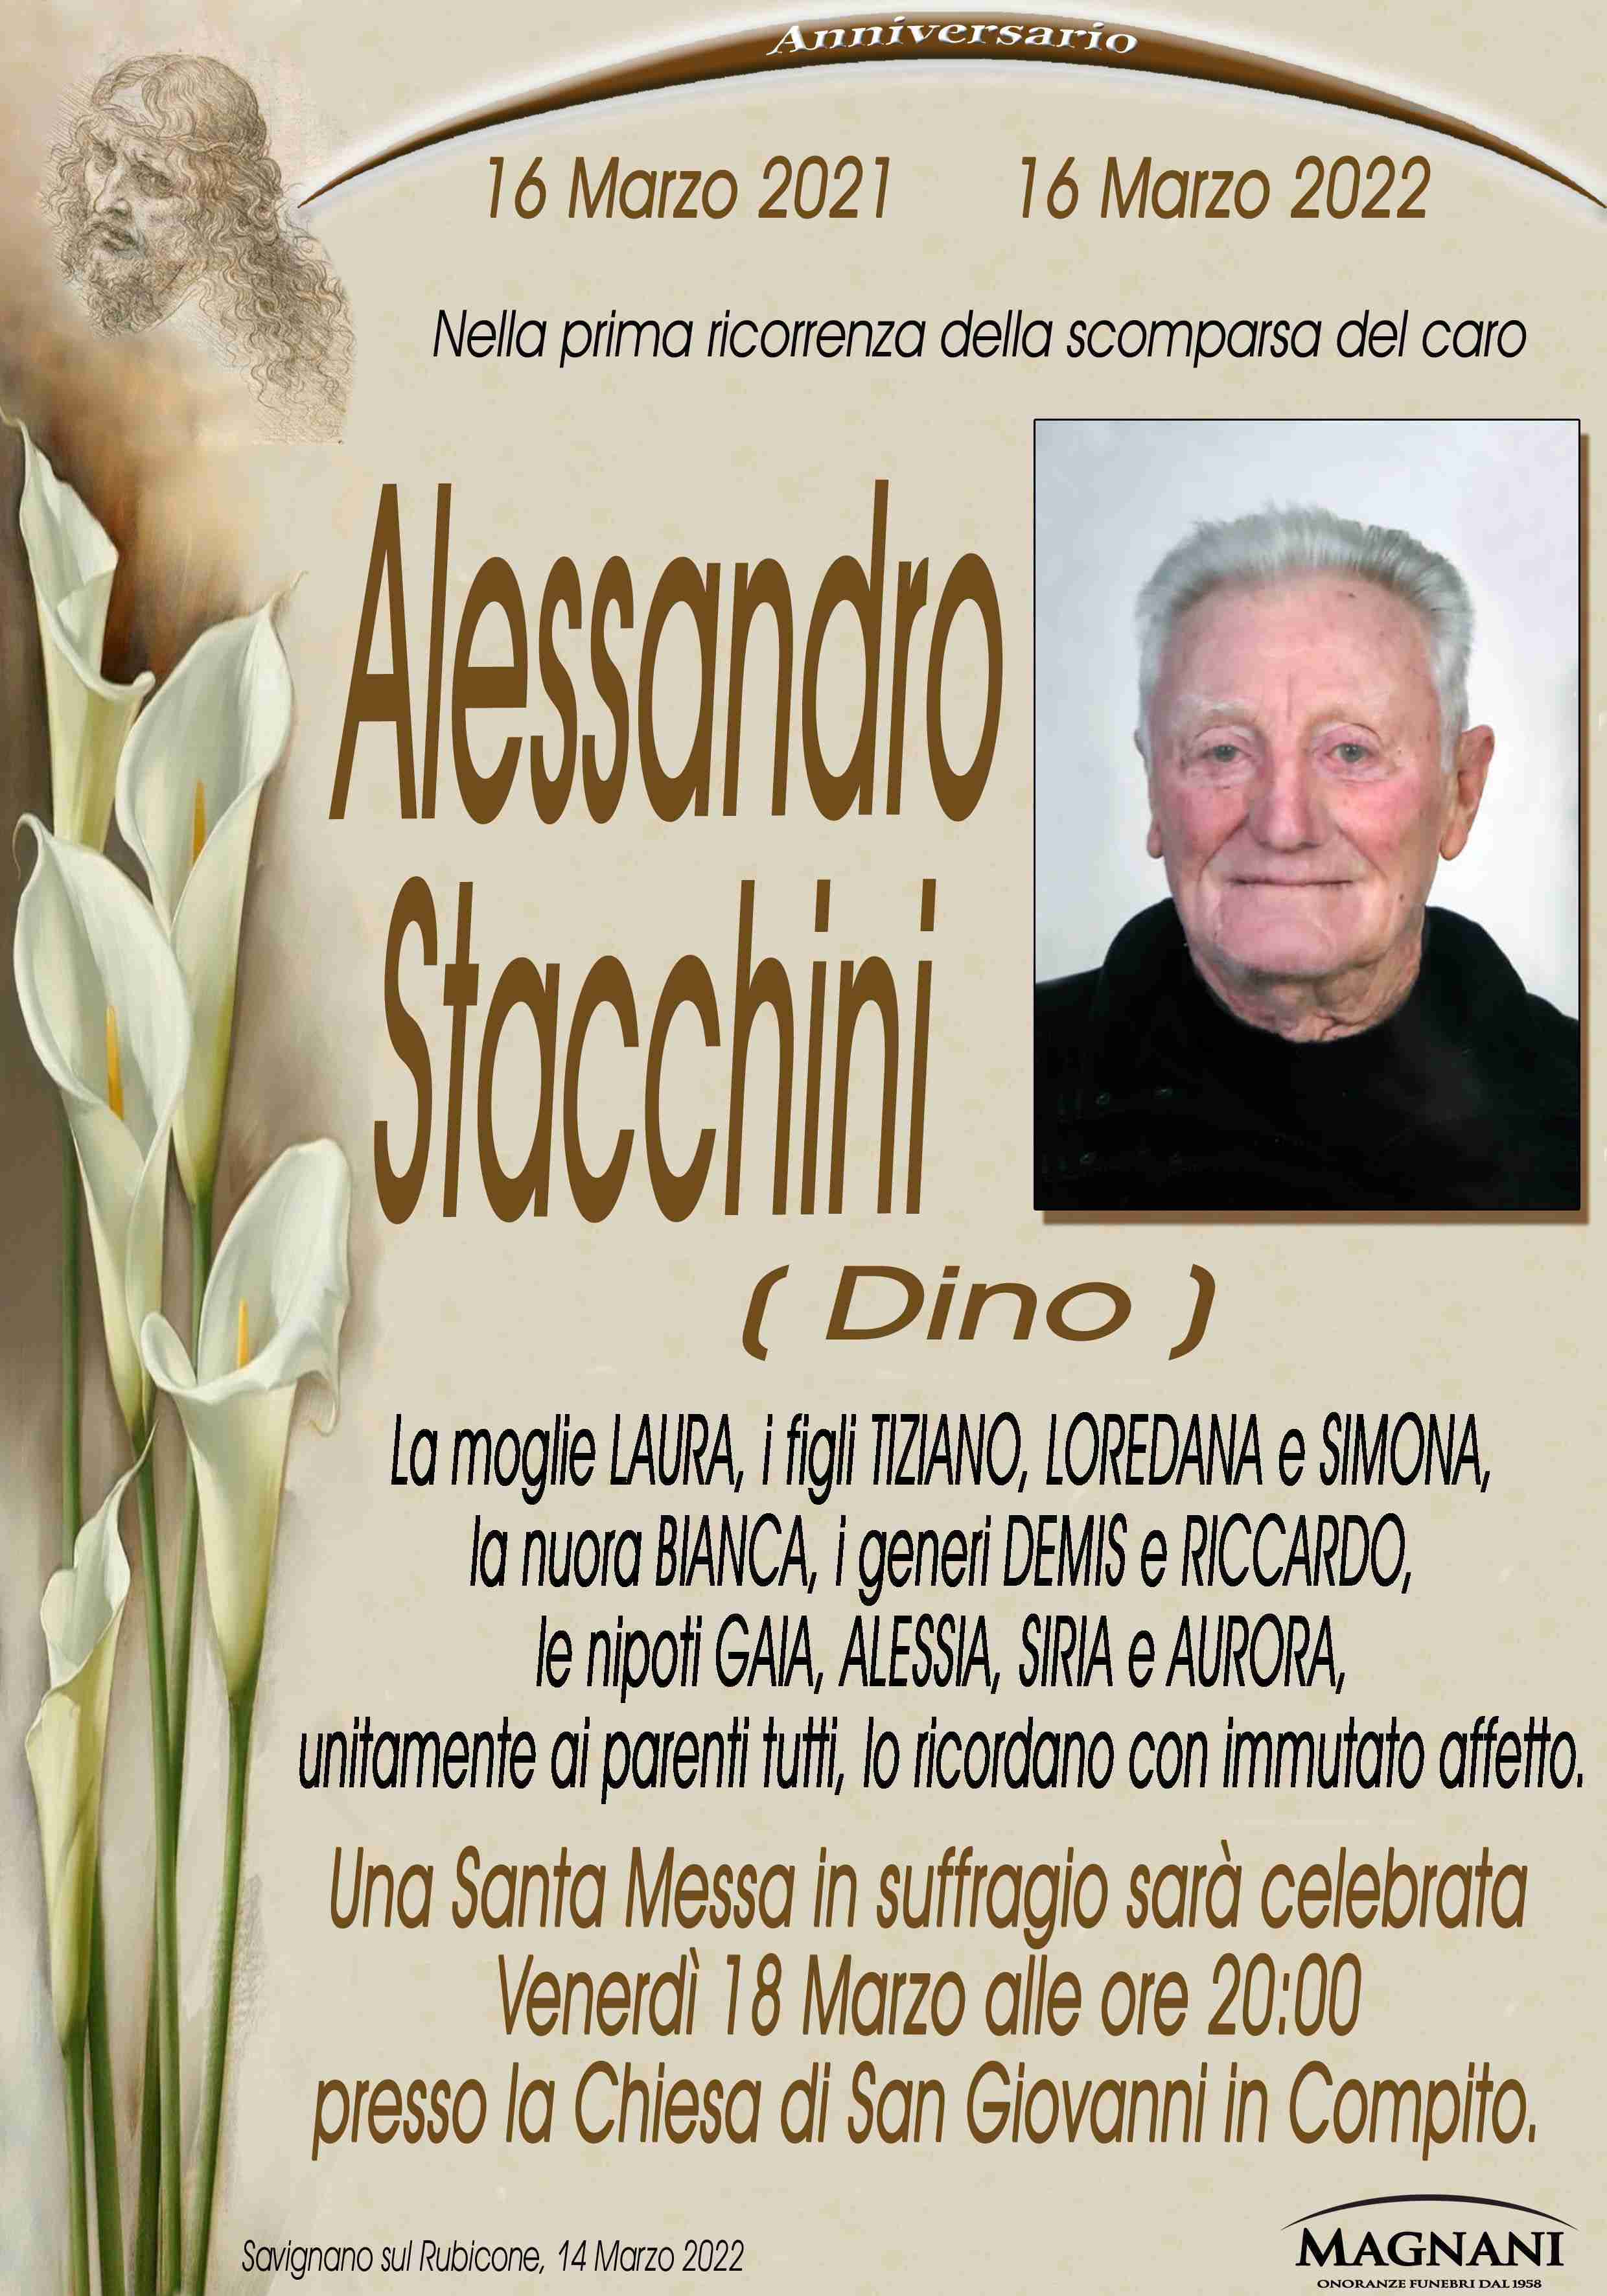 Alessandro Stacchini